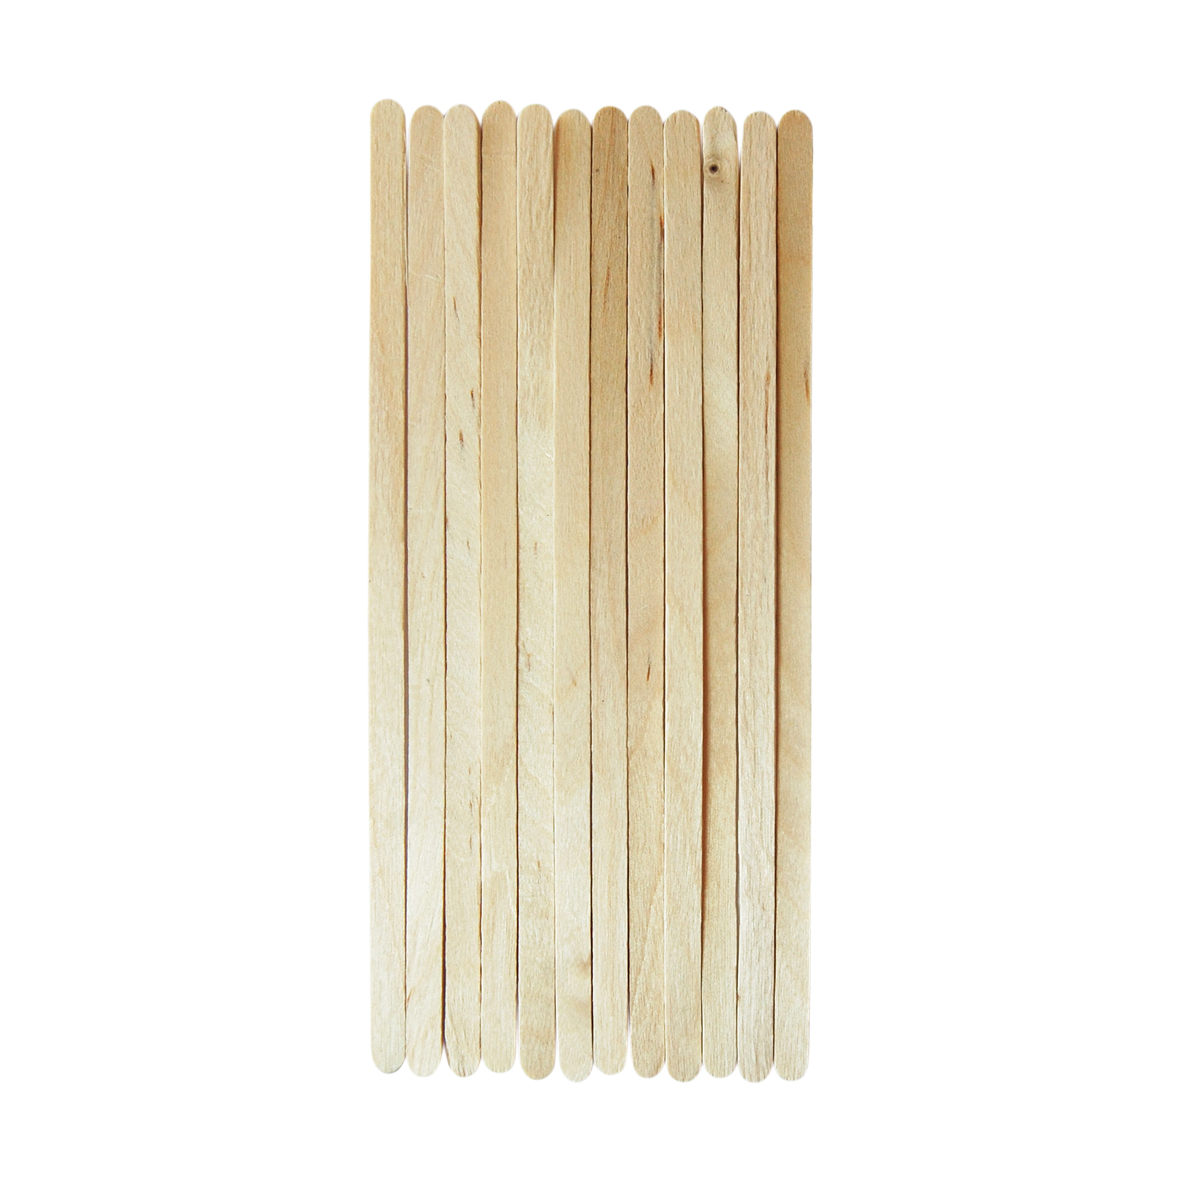 Wooden Stir Sticks Thin